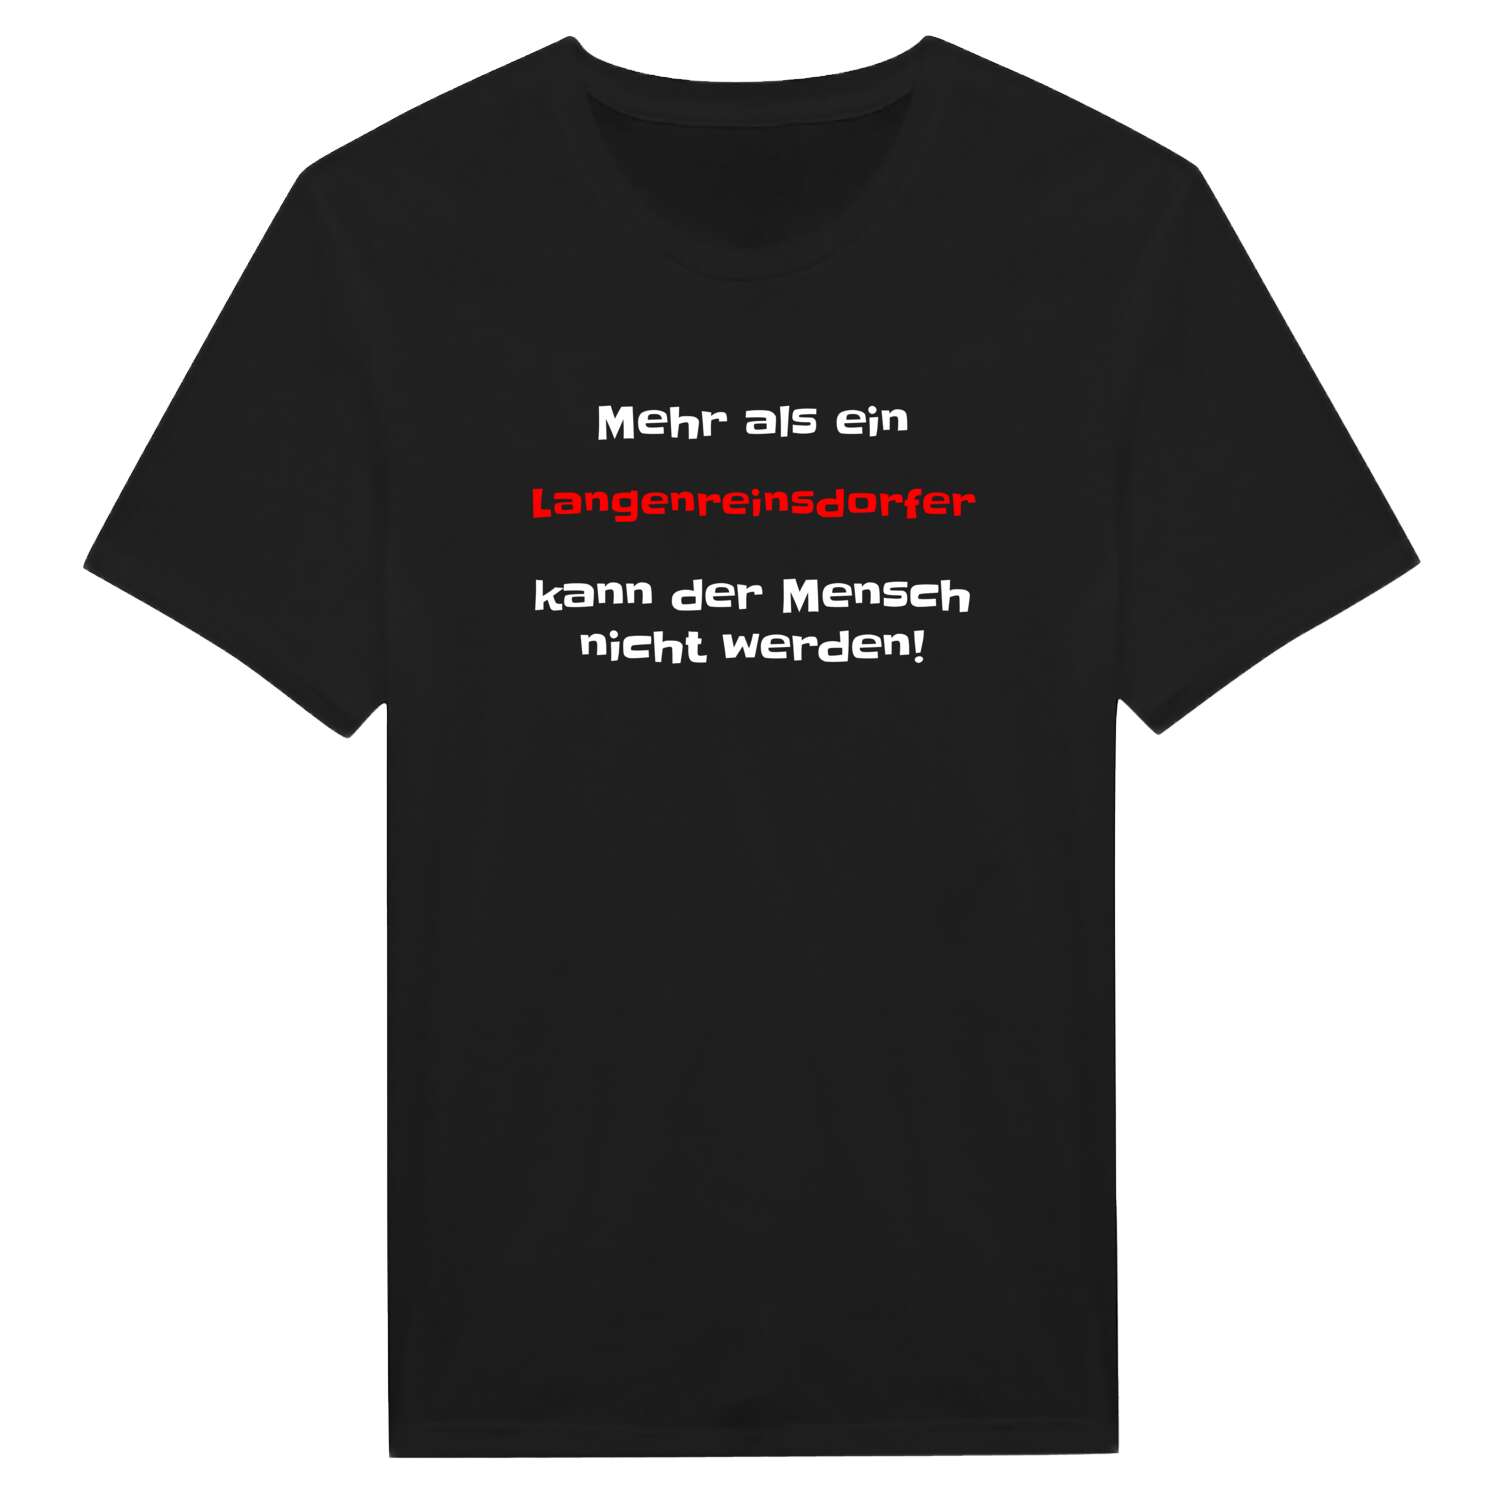 Langenreinsdorf T-Shirt »Mehr als ein«